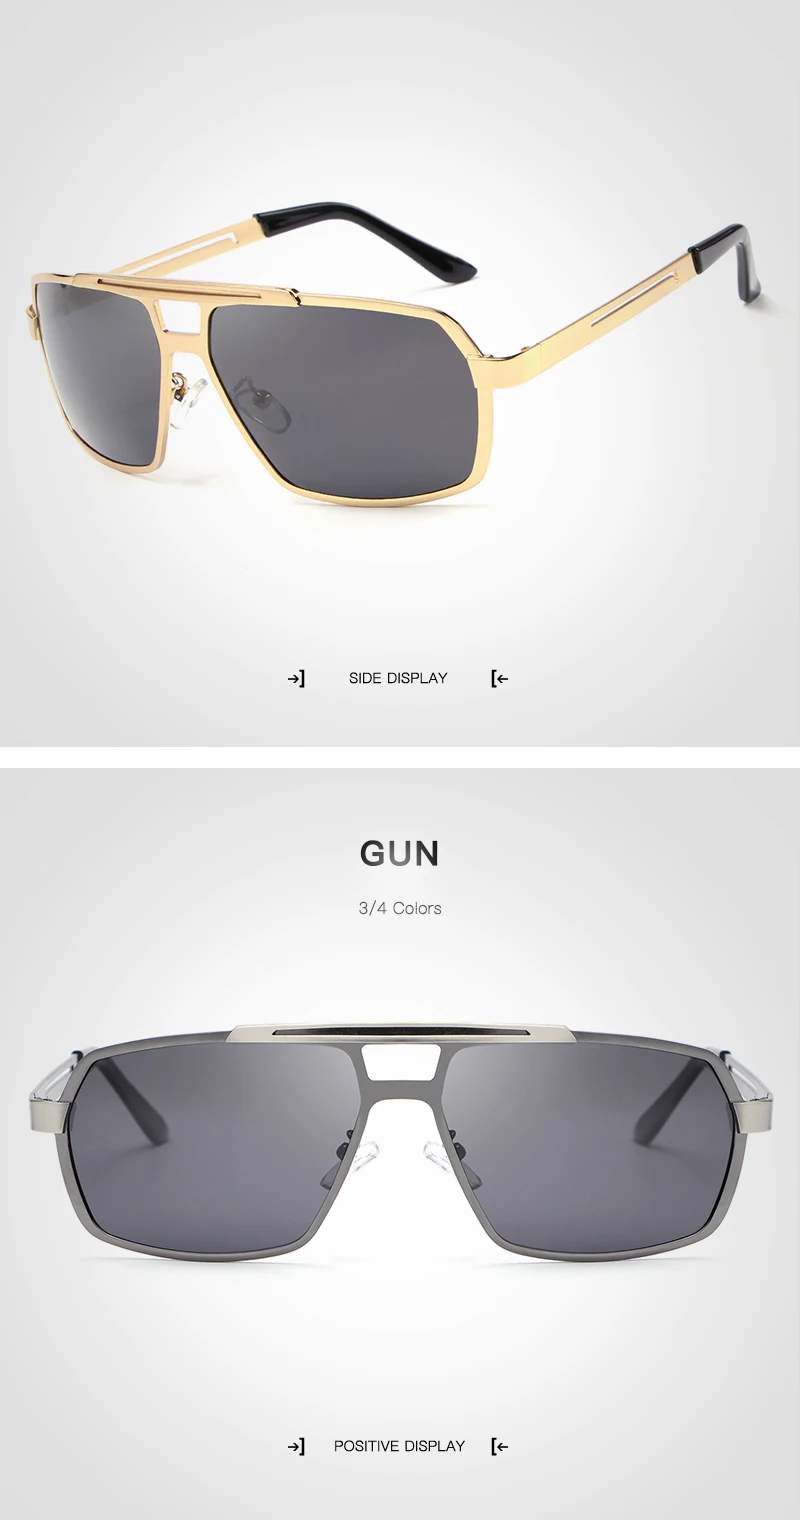 Прямоугольные мужские солнцезащитные очки, поляризационные, UV400, высокое качество, солнцезащитные очки для мужчин, фирменный дизайн, металлические очки для вождения, gafas de sol